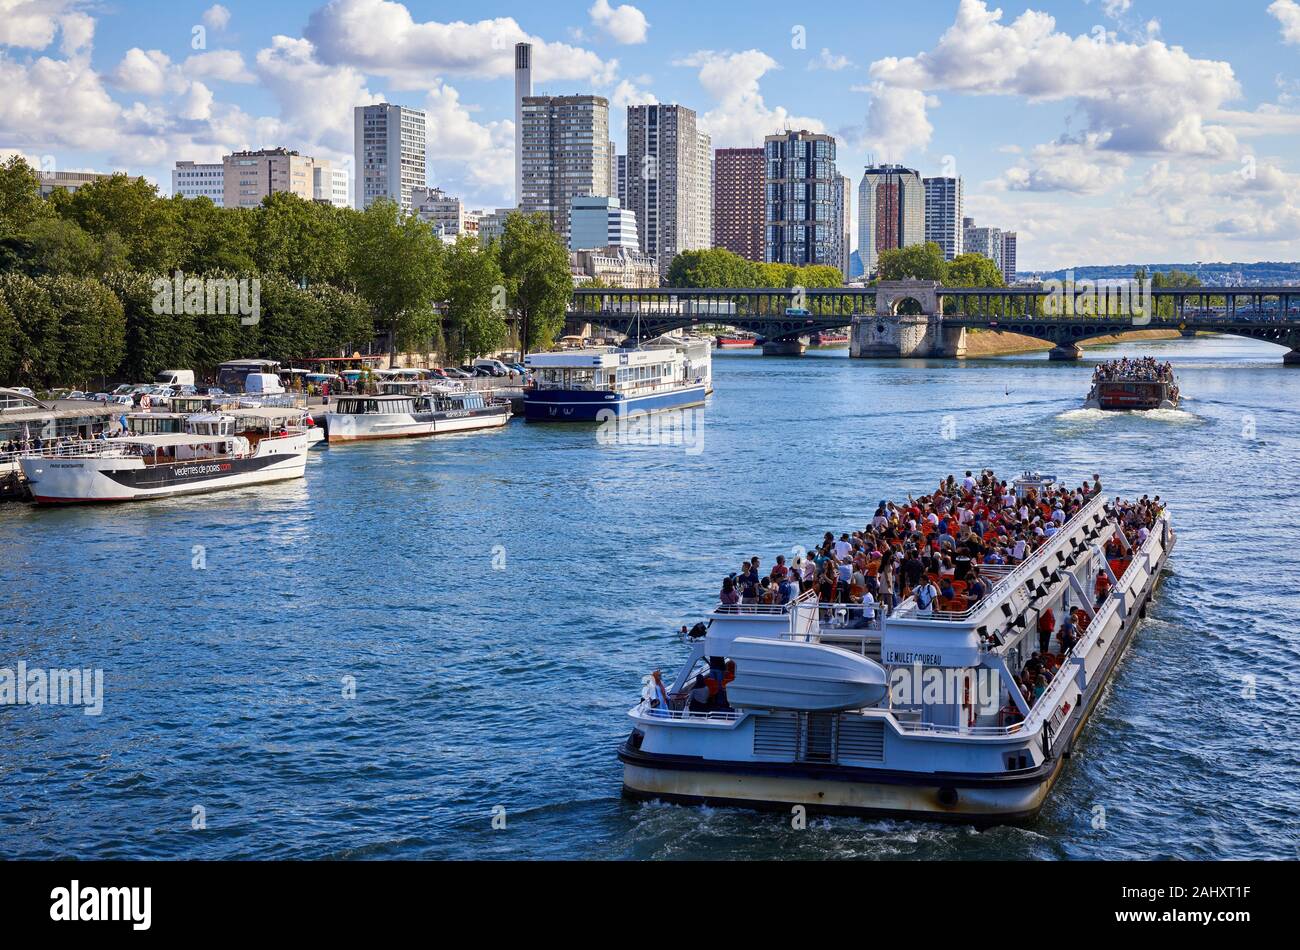 Tourist boat, River Seine, Paris, France Stock Photo